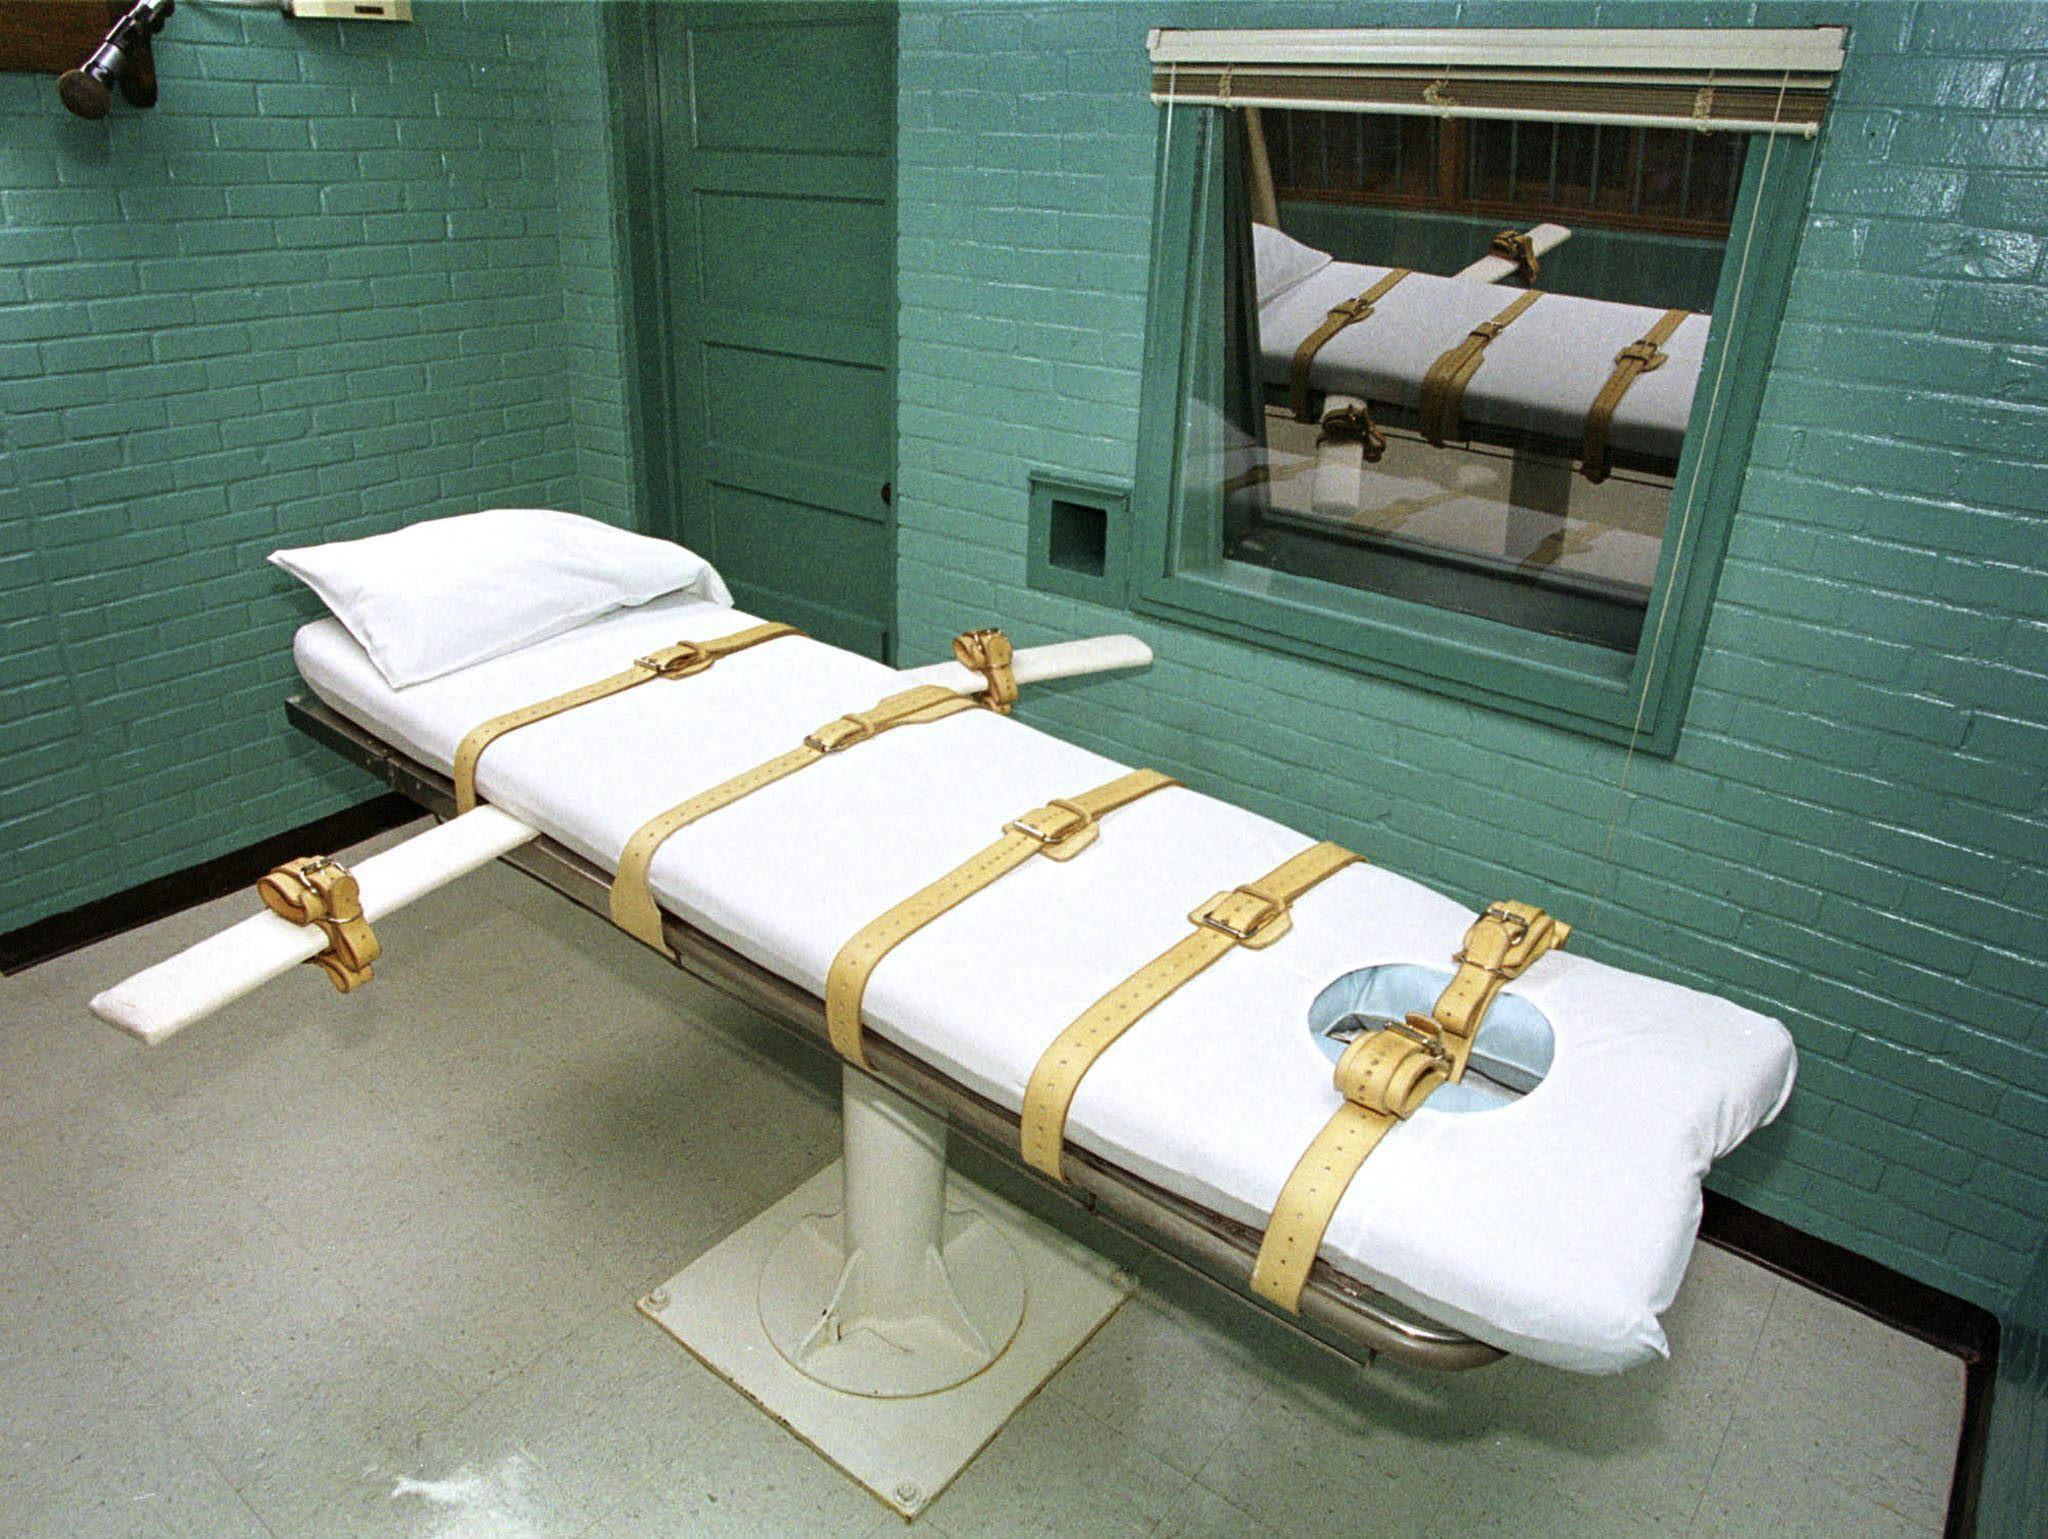 El apoyo a la condena a muerte cae a un mínimo histórico en EEUU